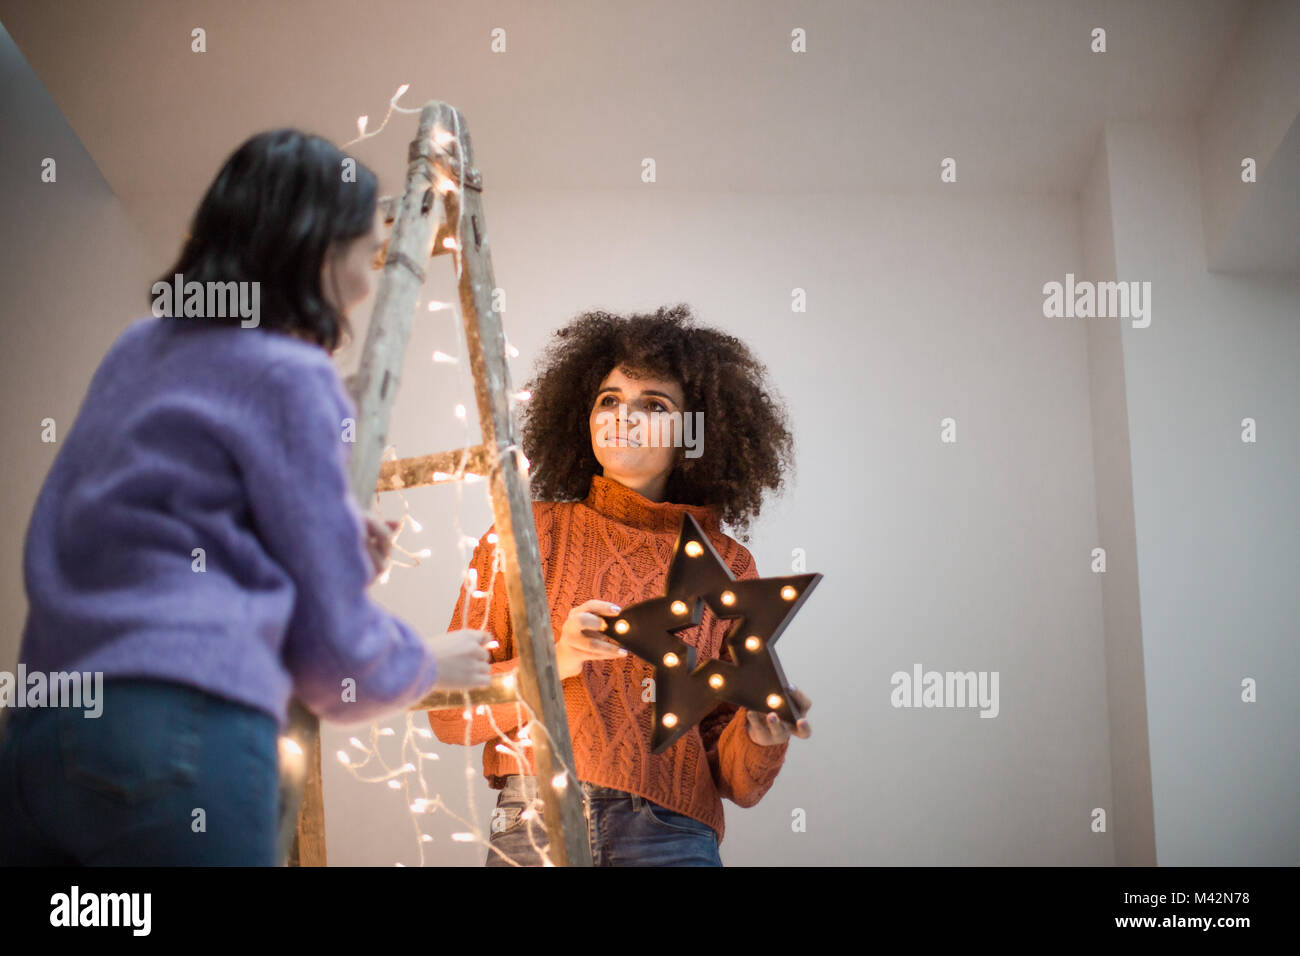 Amigos Decorar un árbol de navidad alternativo Foto de stock